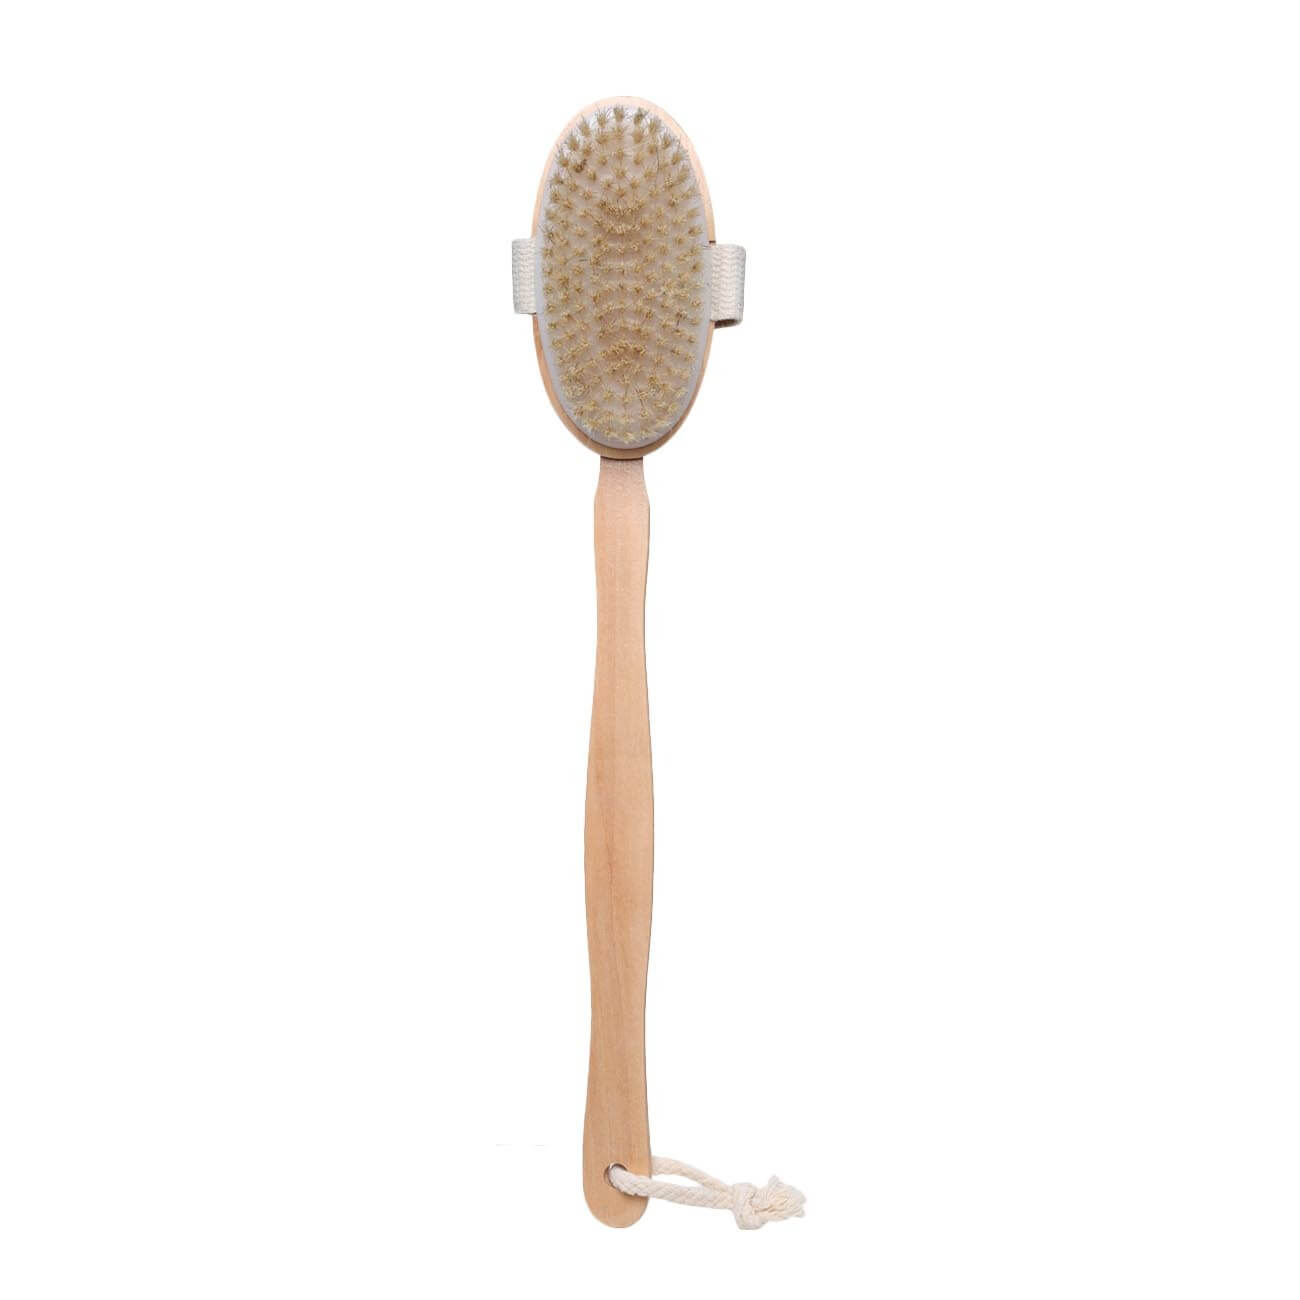 Щетка для сухого массажа, 40 см, с держателем, дерево/нейлон, Bamboo spa изображение № 1